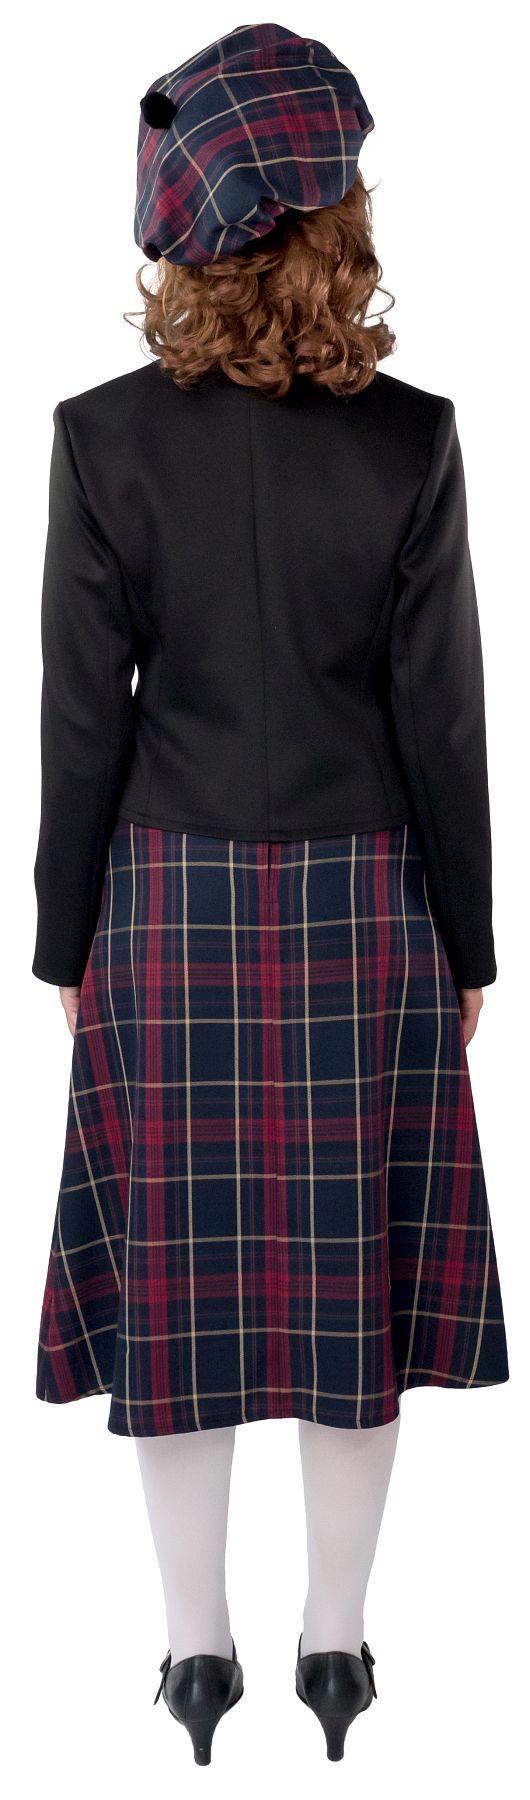 Veste écossaise pour femme, Deluxe